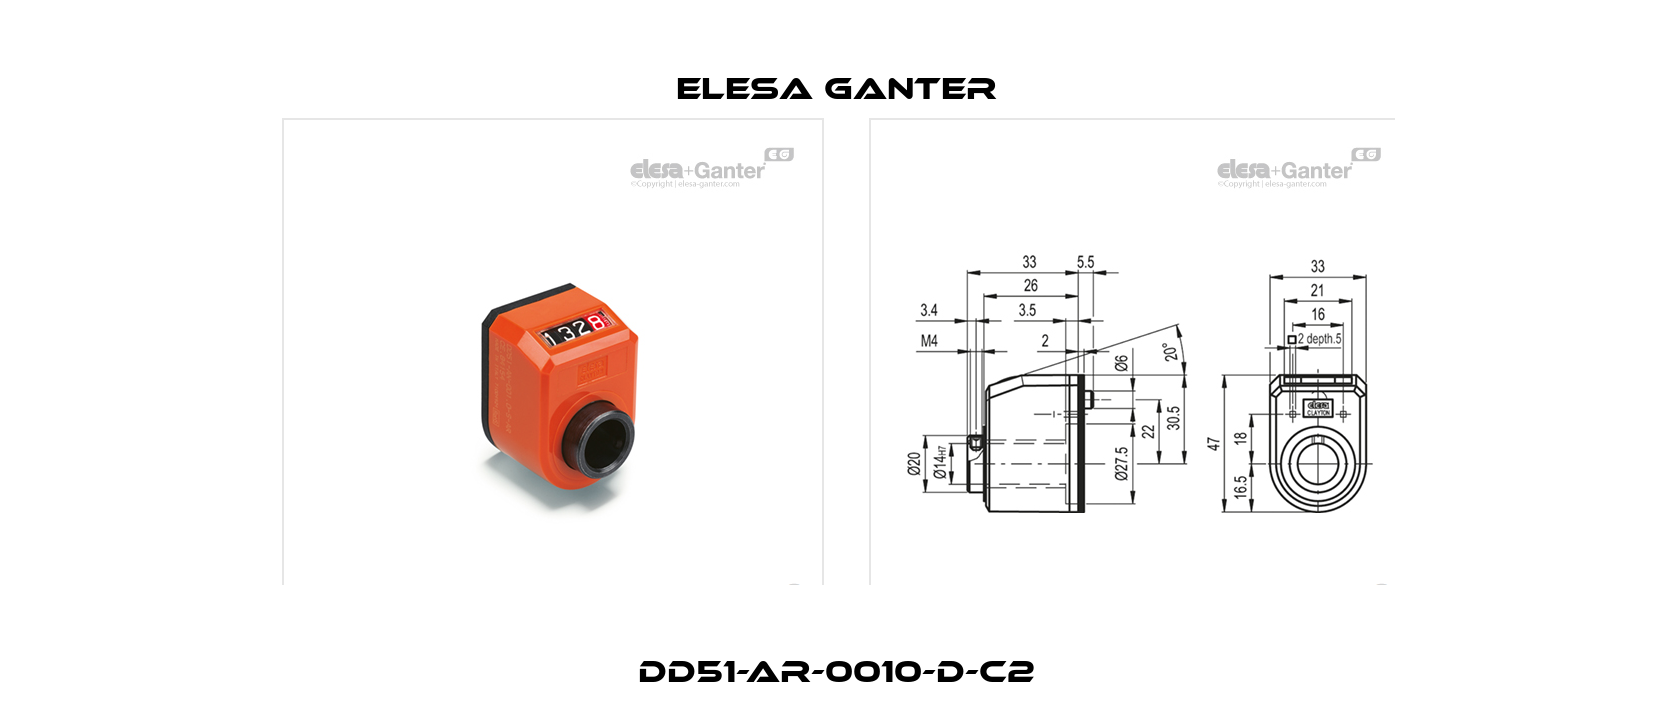 DD51-AR-0010-D-C2 Elesa Ganter